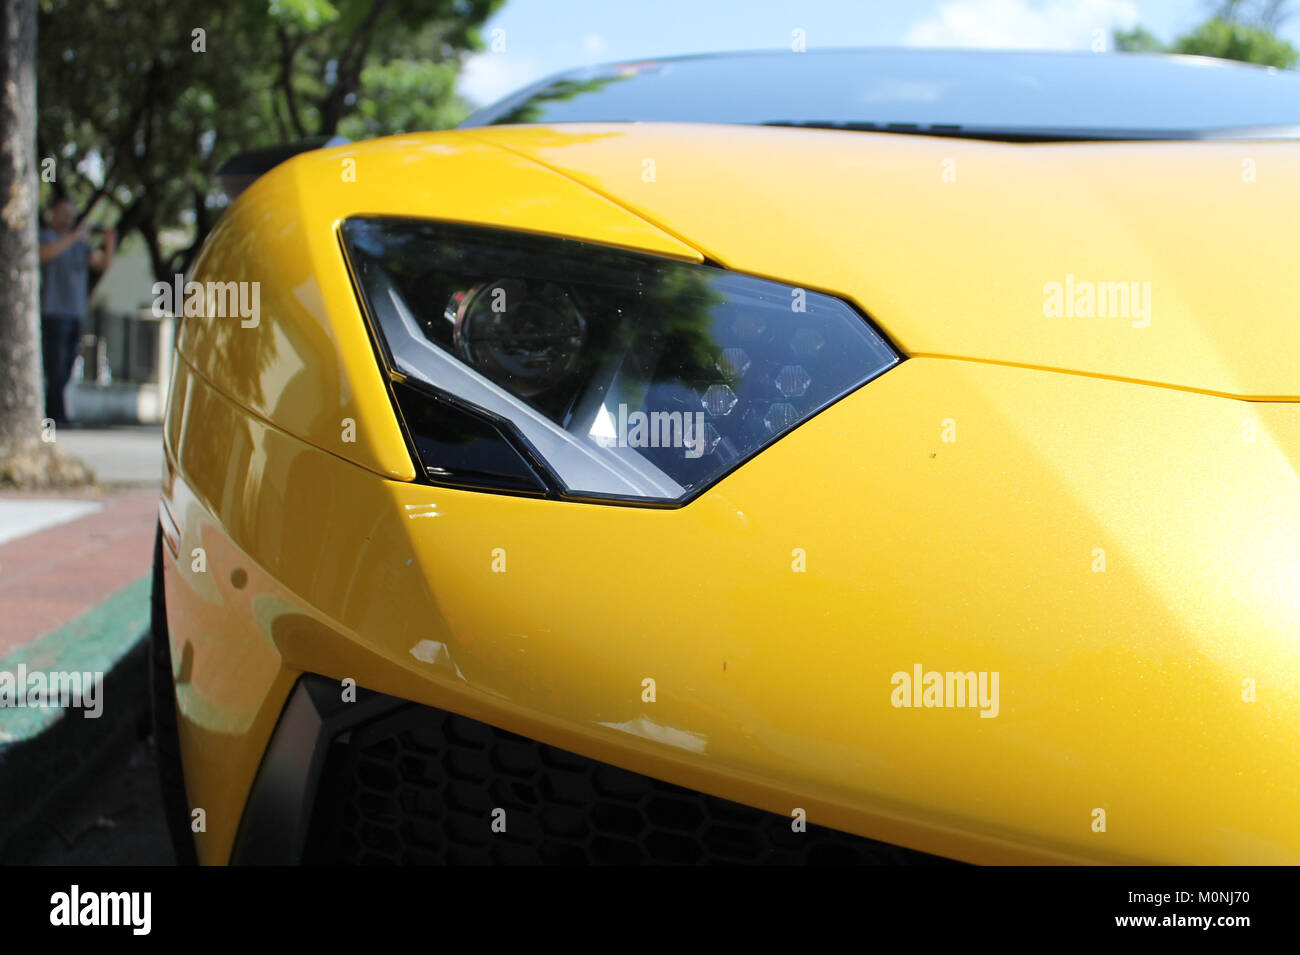 Lamborghini Aventador SV In Yellow Color Stock Photo - Alamy